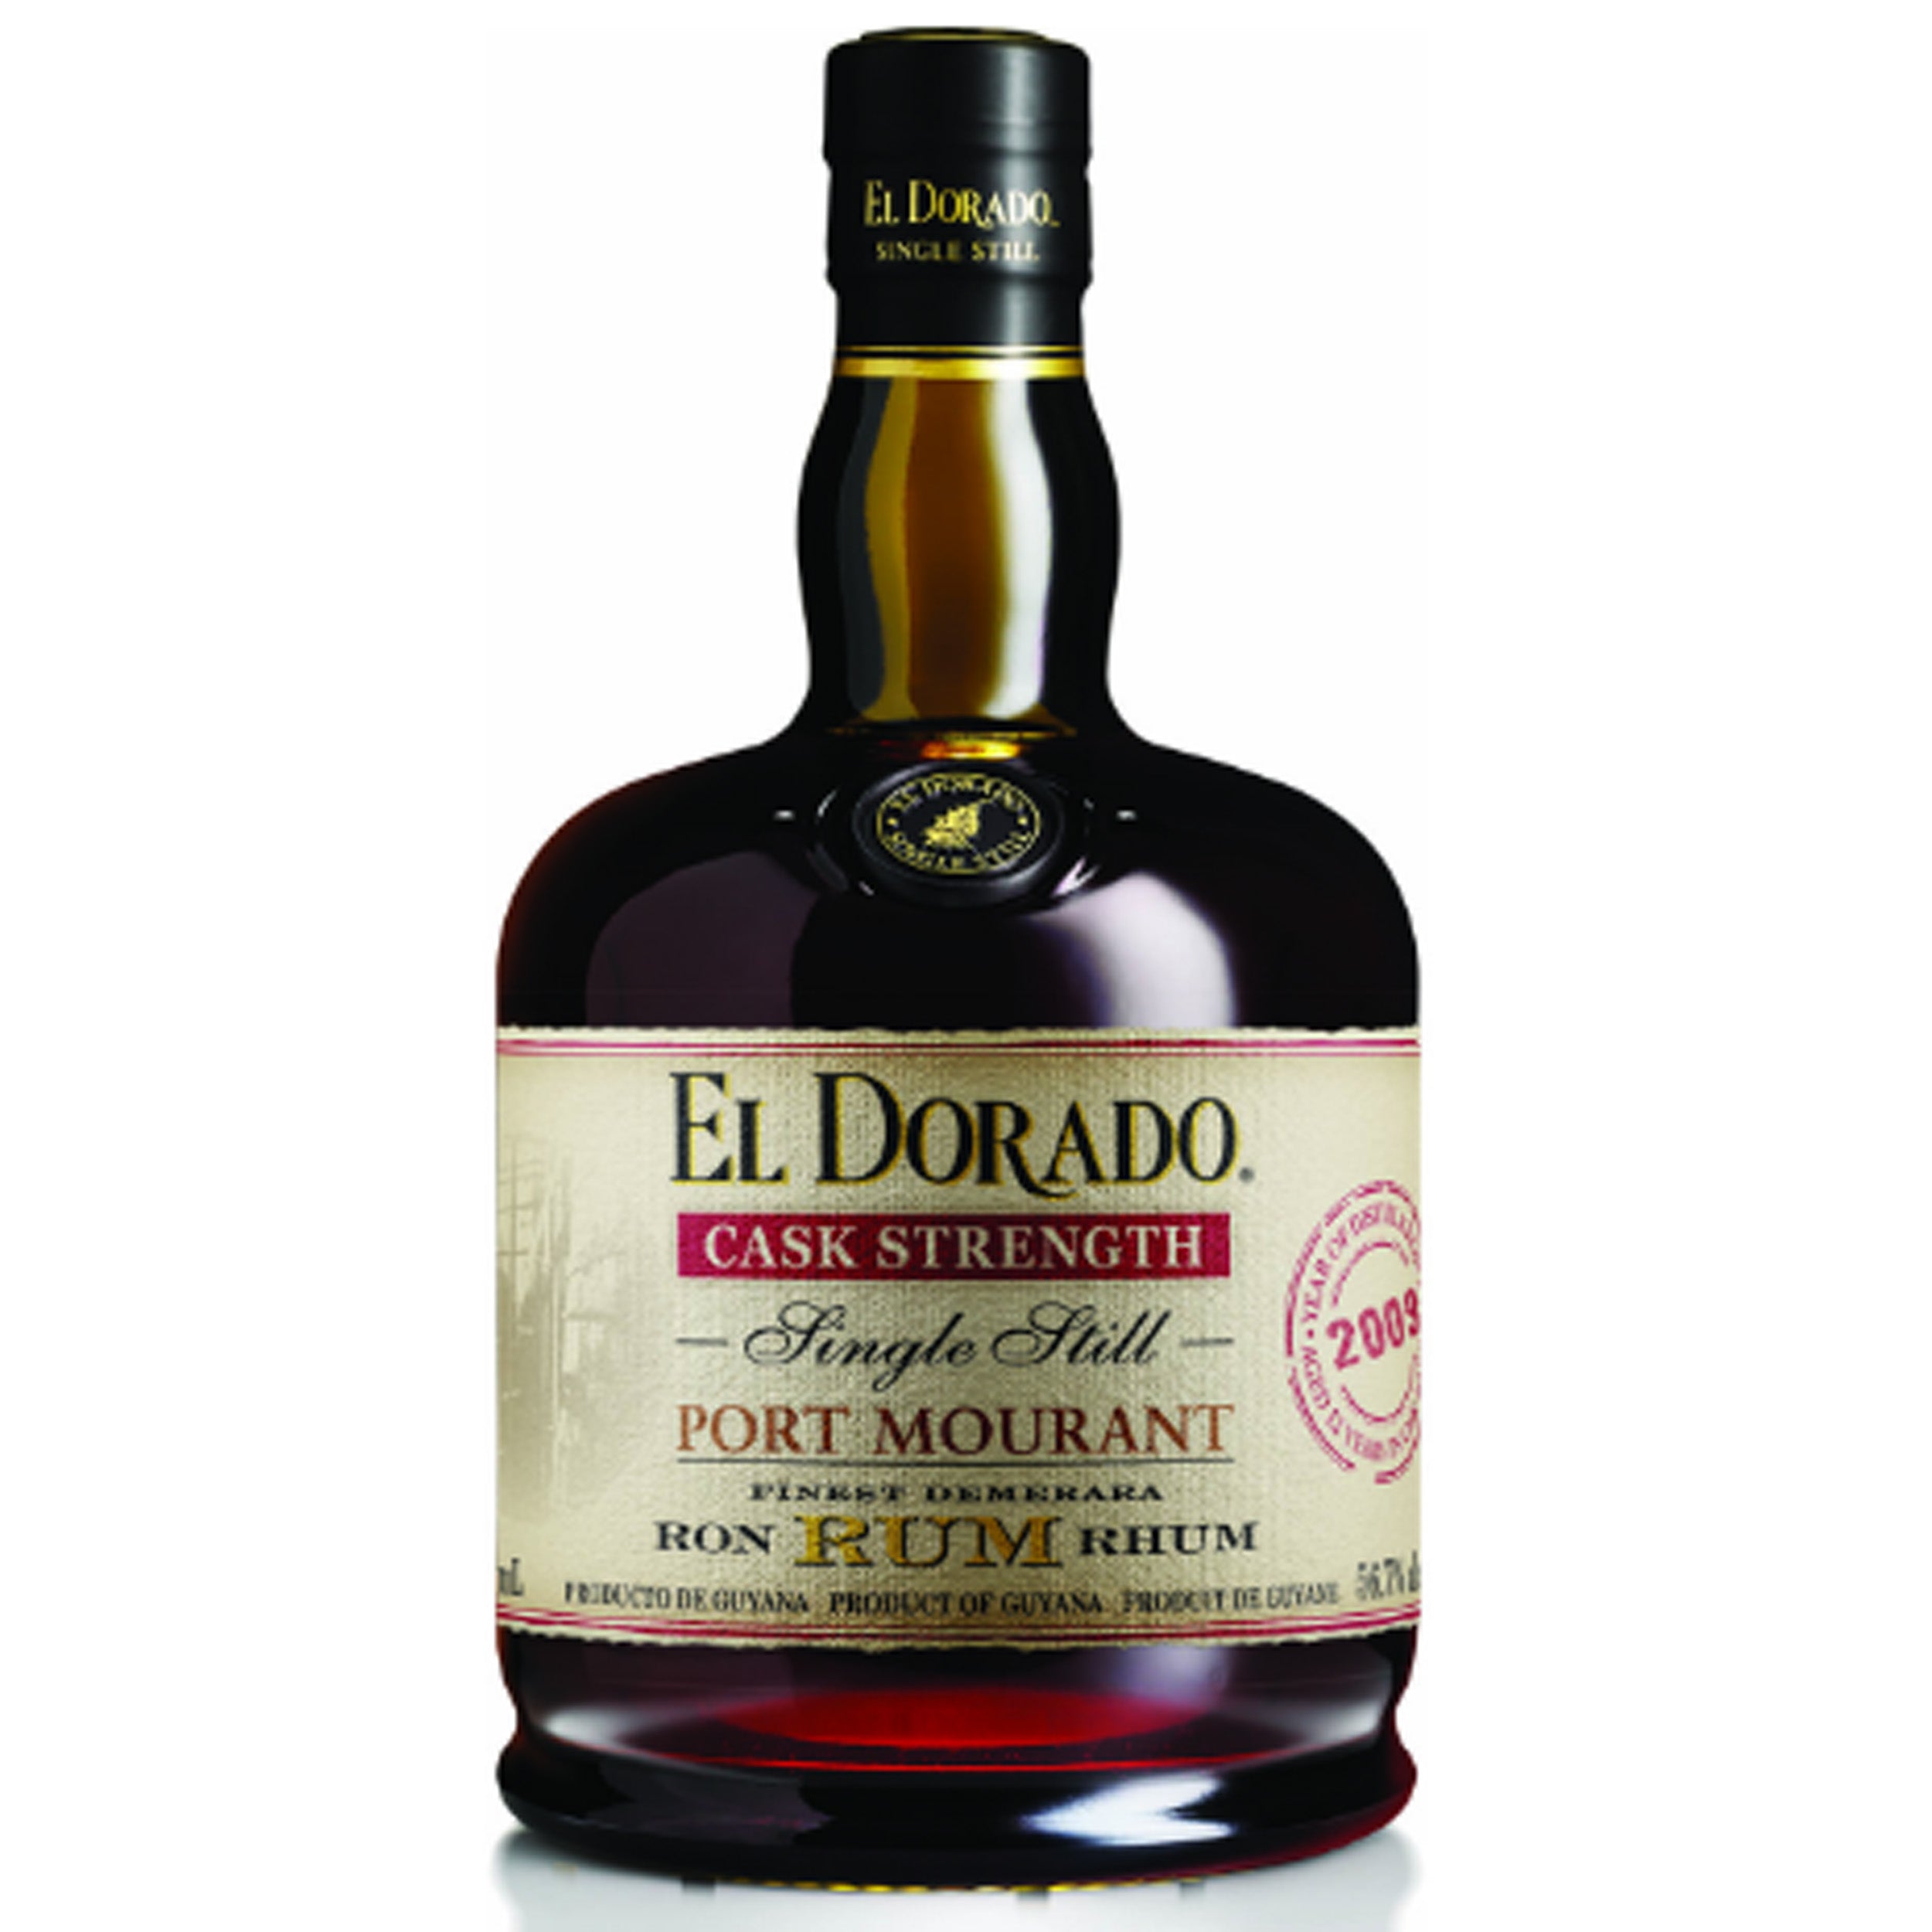 El Dorado Port  Mourant Single Still Cask Strength 12 Year Rum